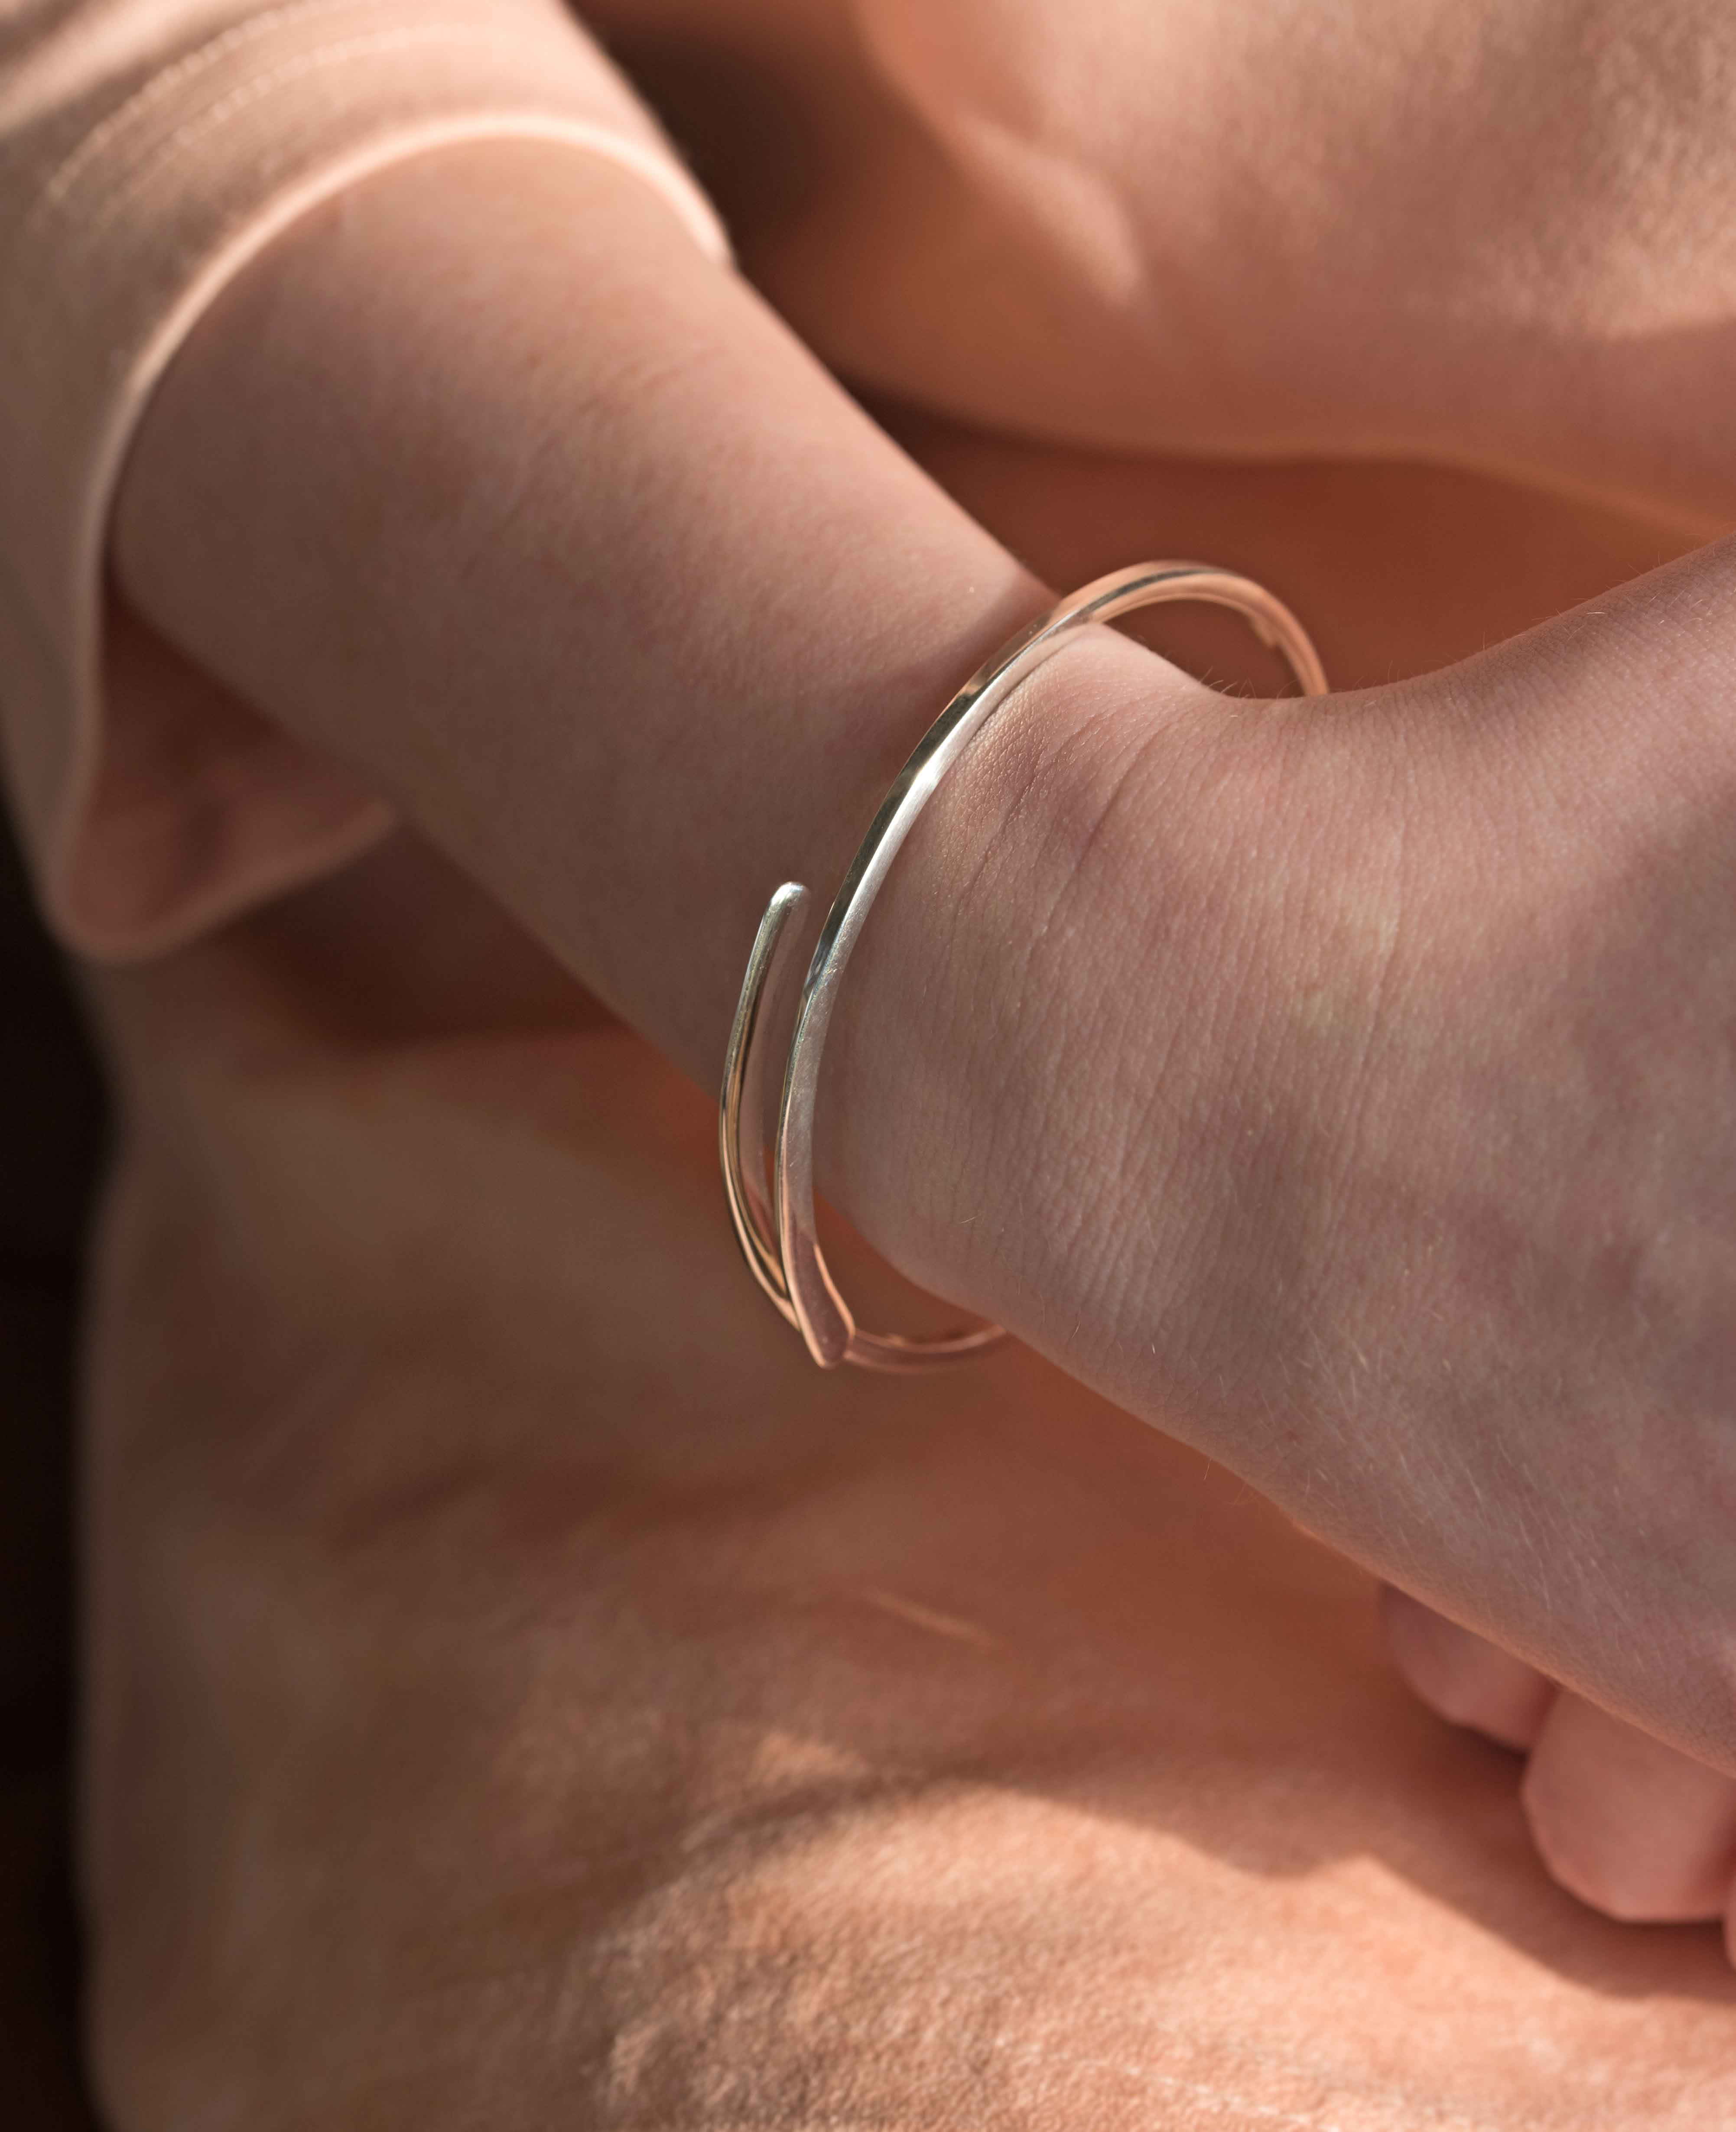 Sterling Silver Bangle Bracelet Adjustable gift for women